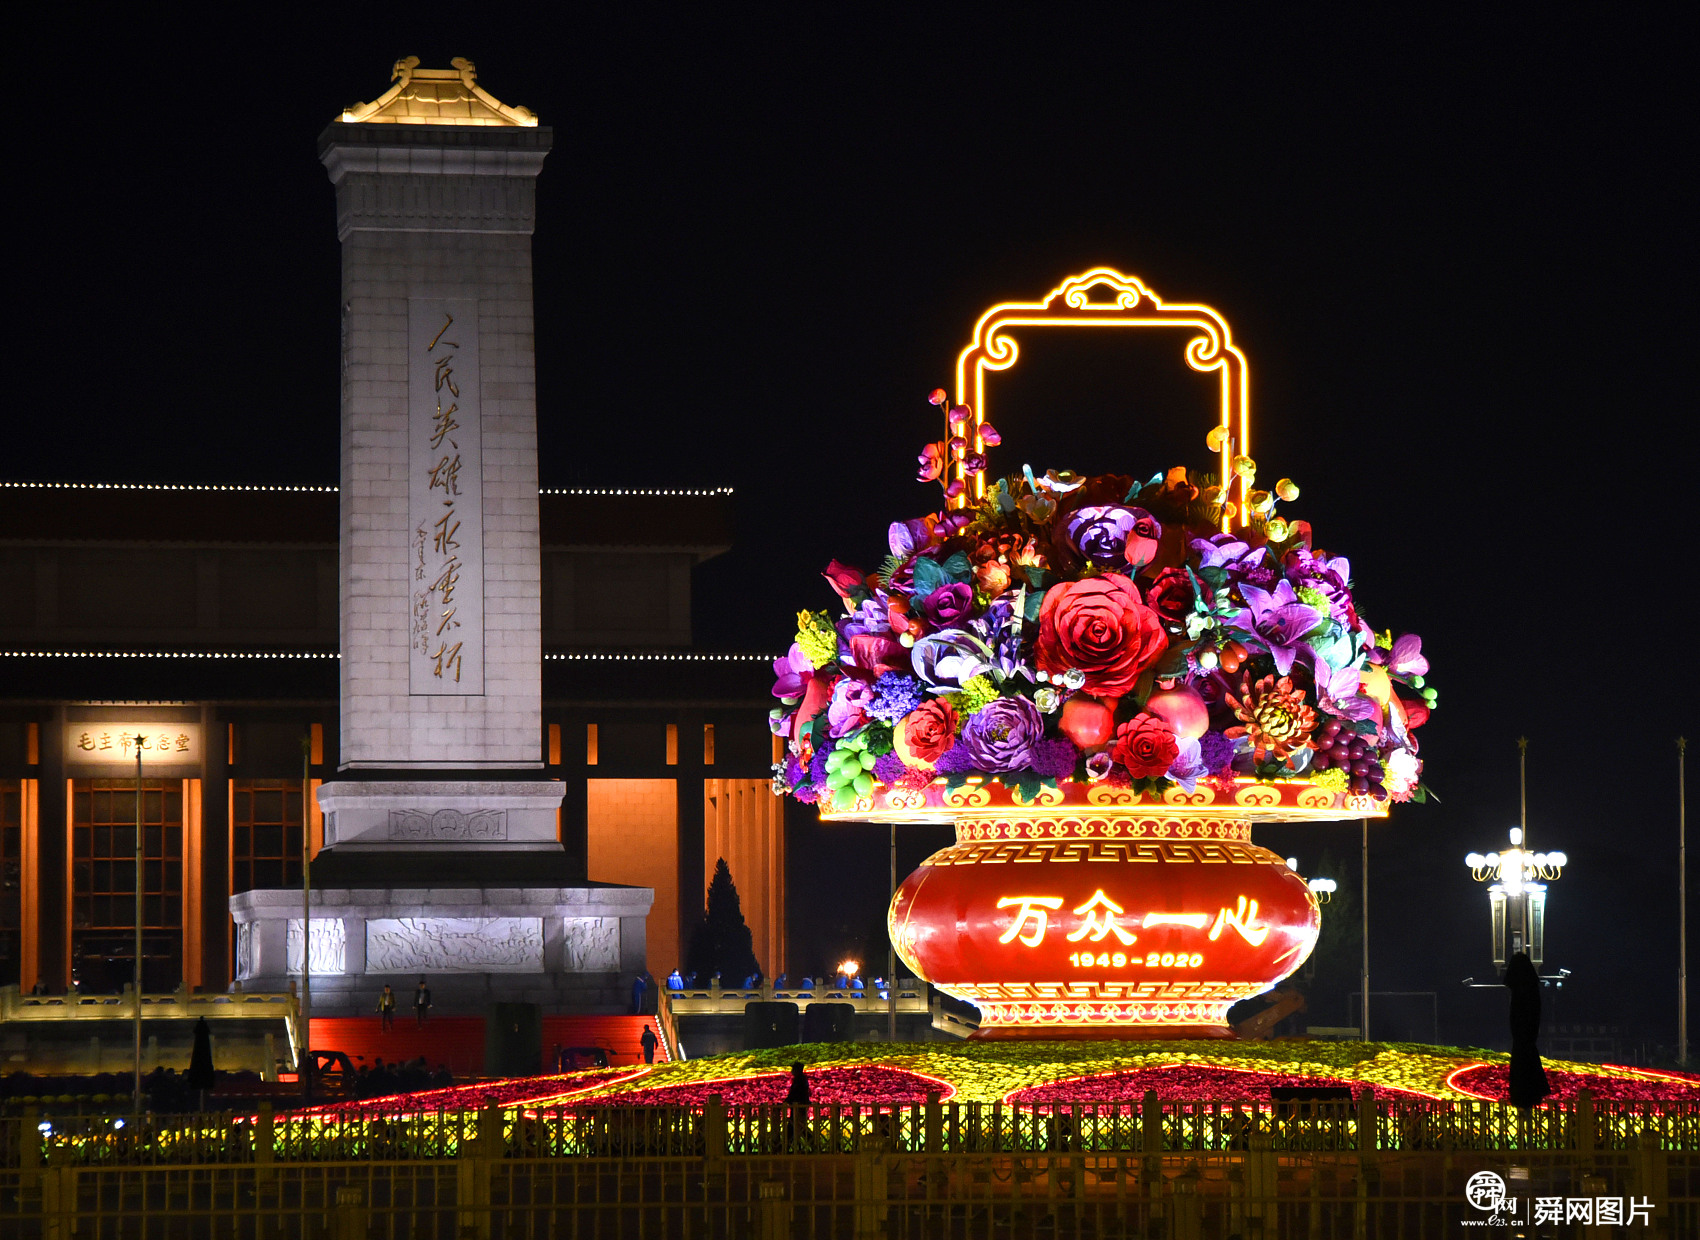 北京：天安门广场“祝福祖国”花篮亮灯 夜色璀璨惹人醉